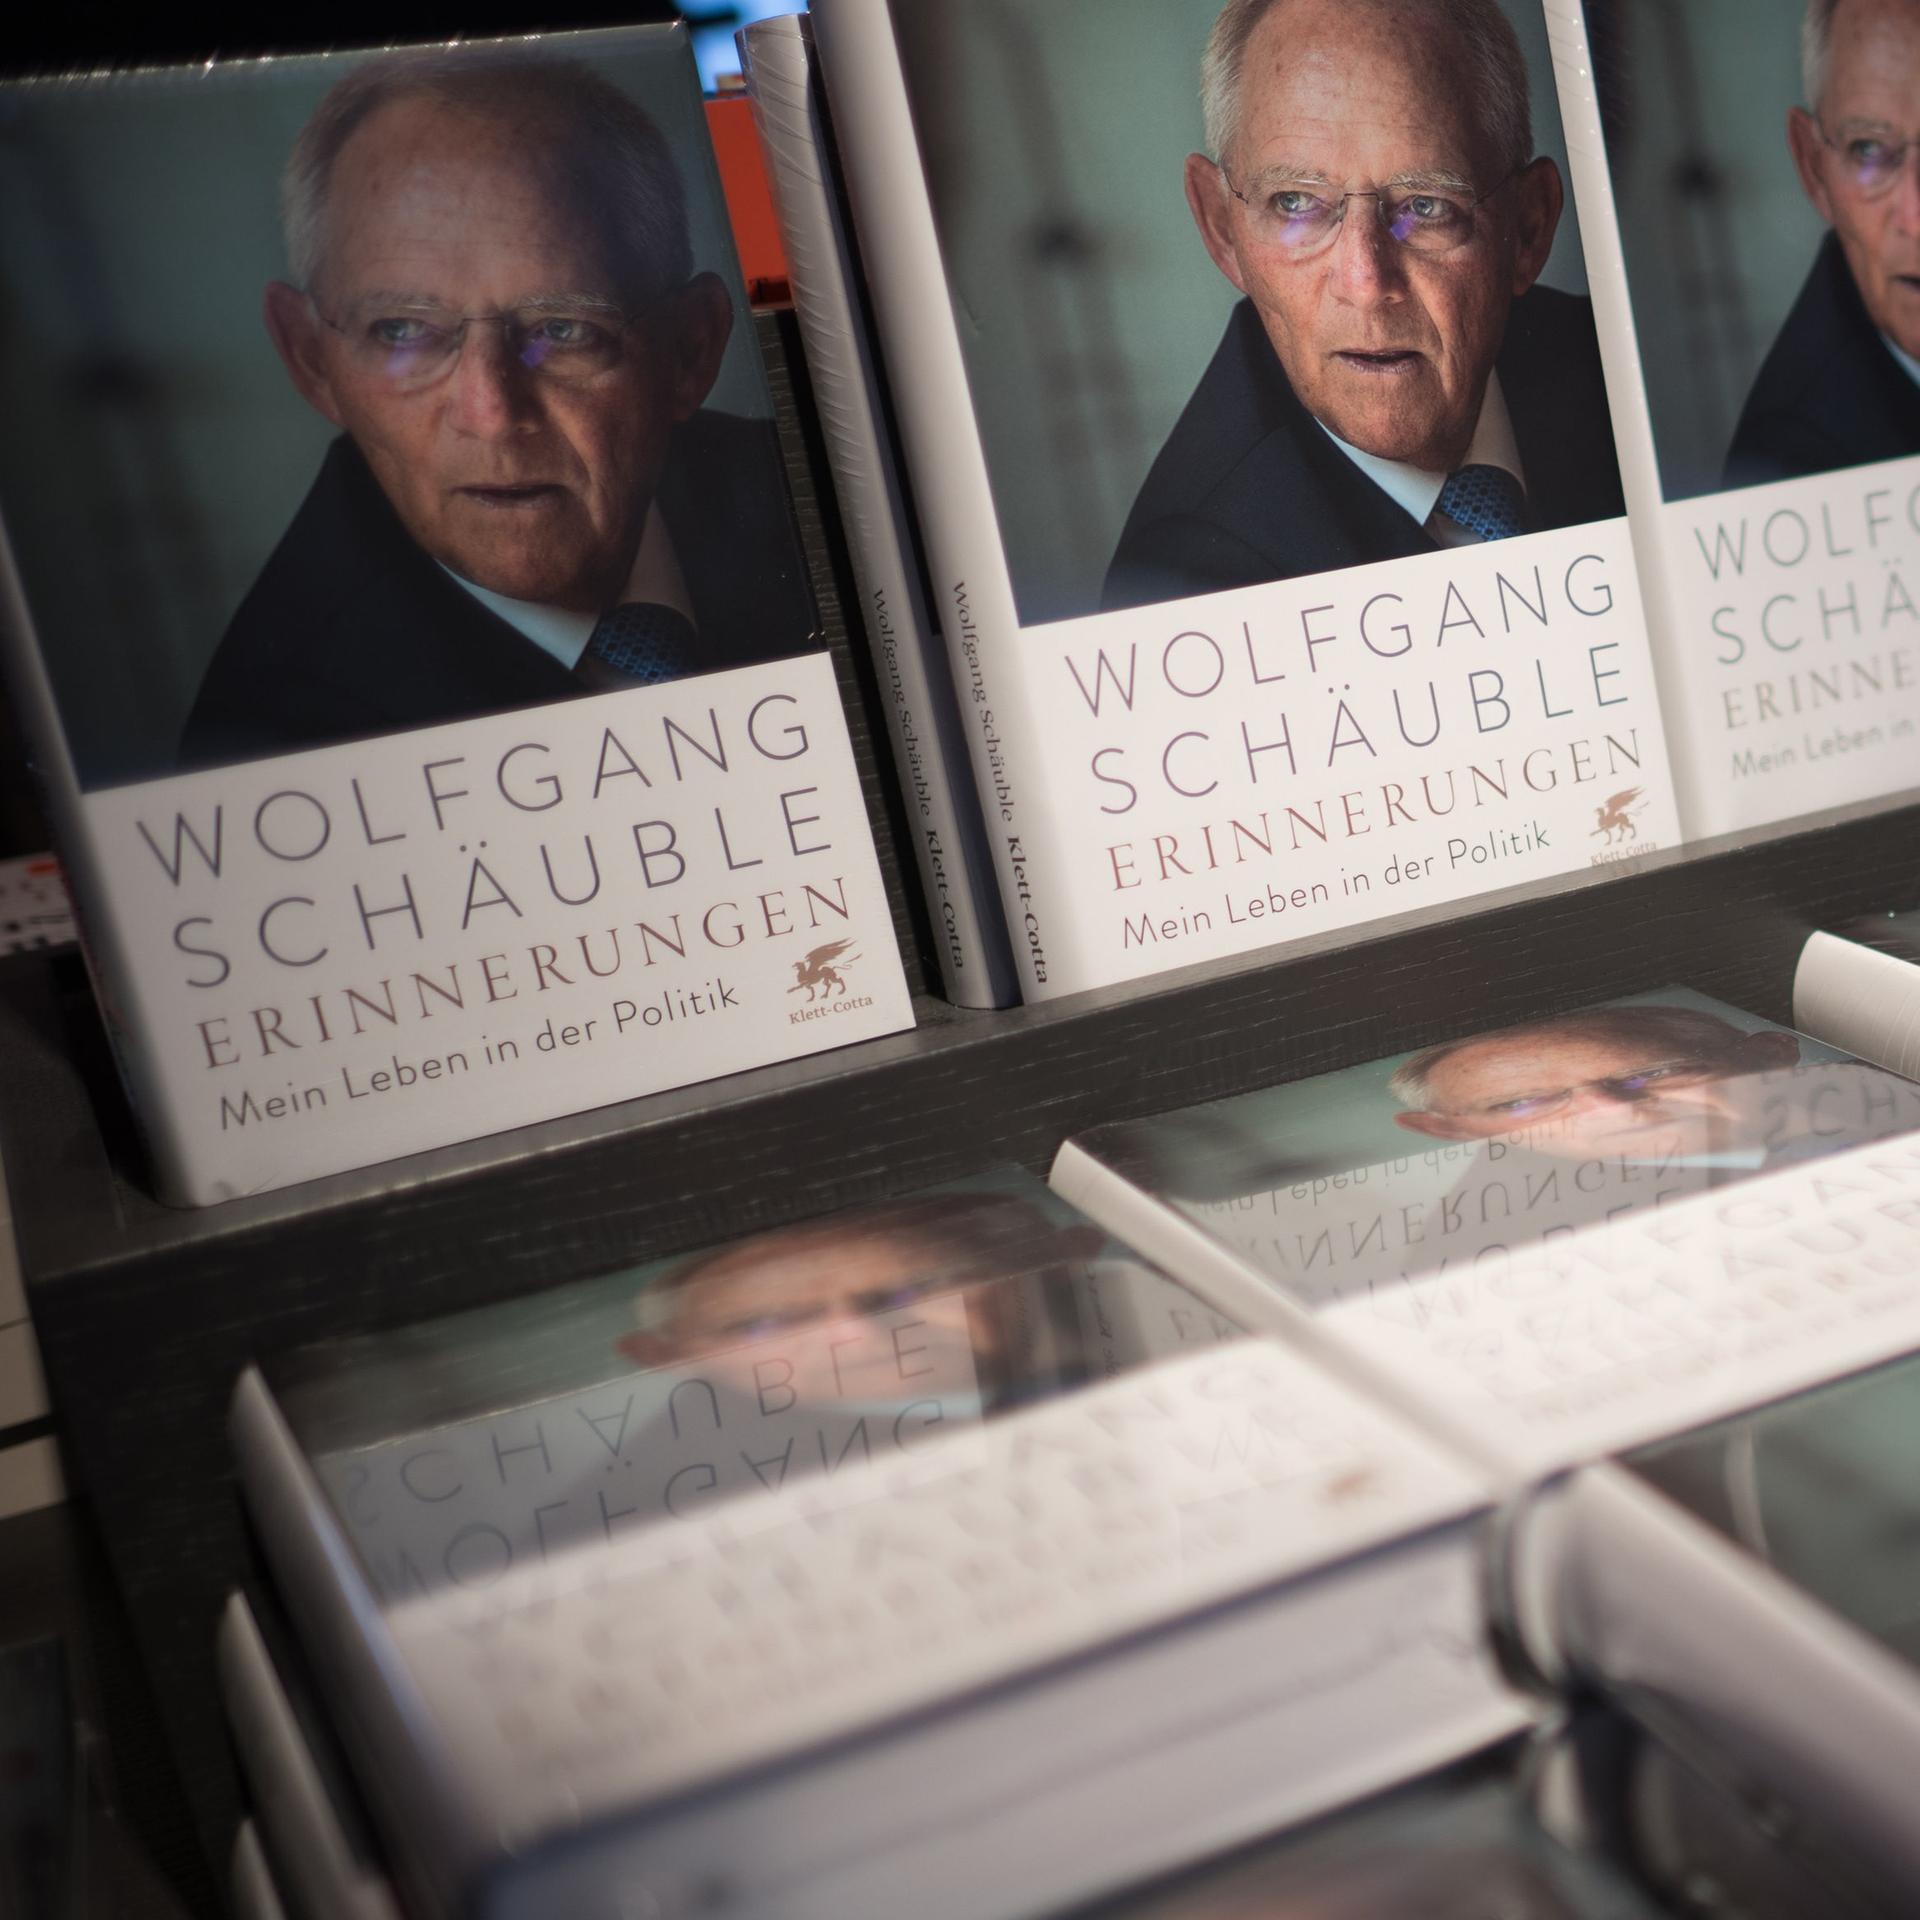 Schäubles „Erinnerungen“ – Albrecht von Lucke: „Ein großes Geschichtsbuch“